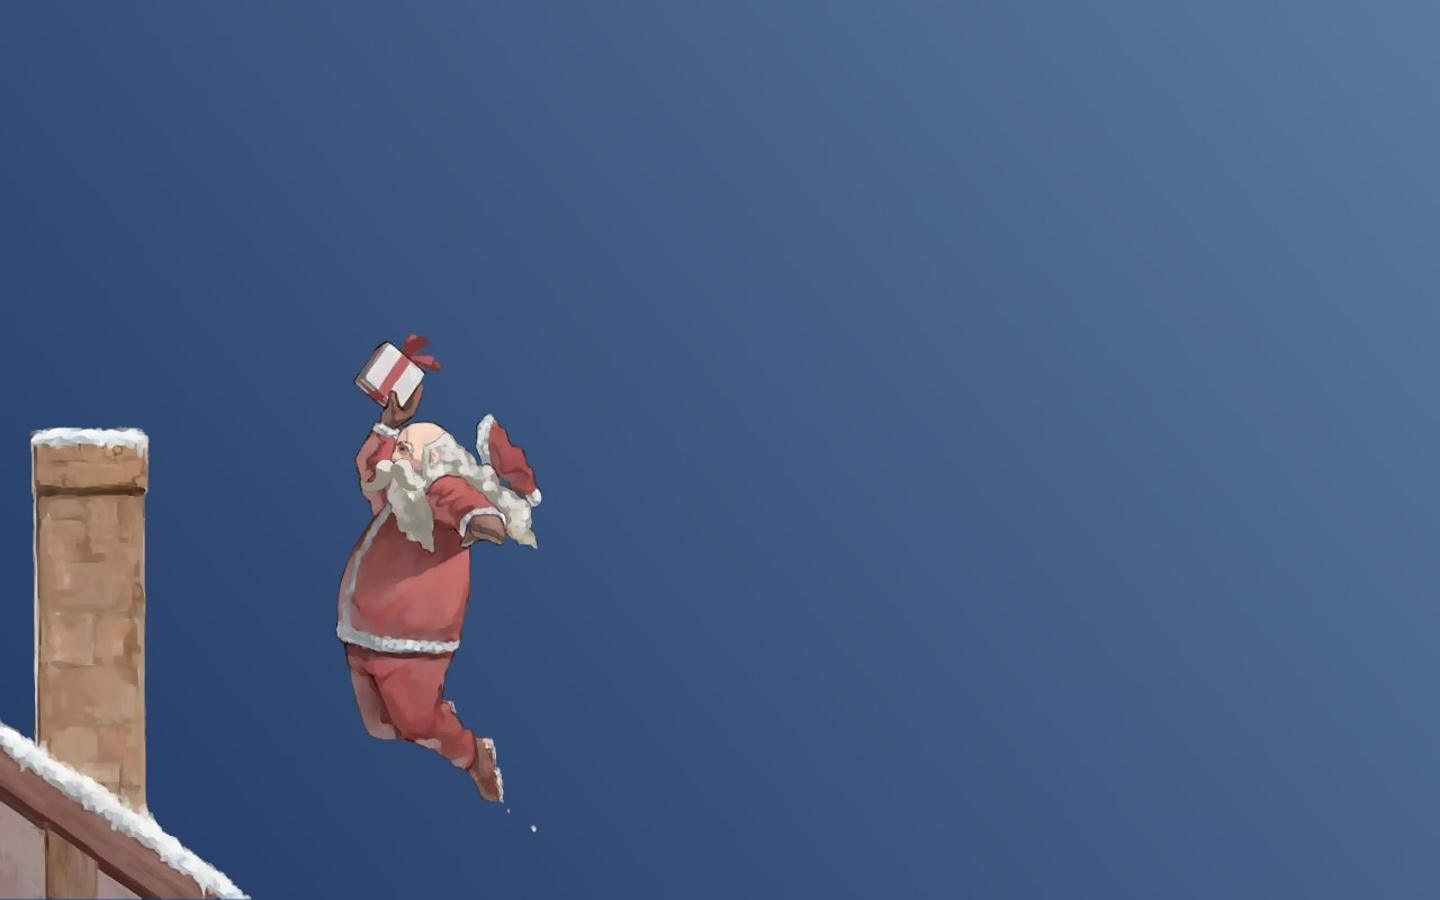 Funny Christmas Wallpaper Jumping Santa Claus